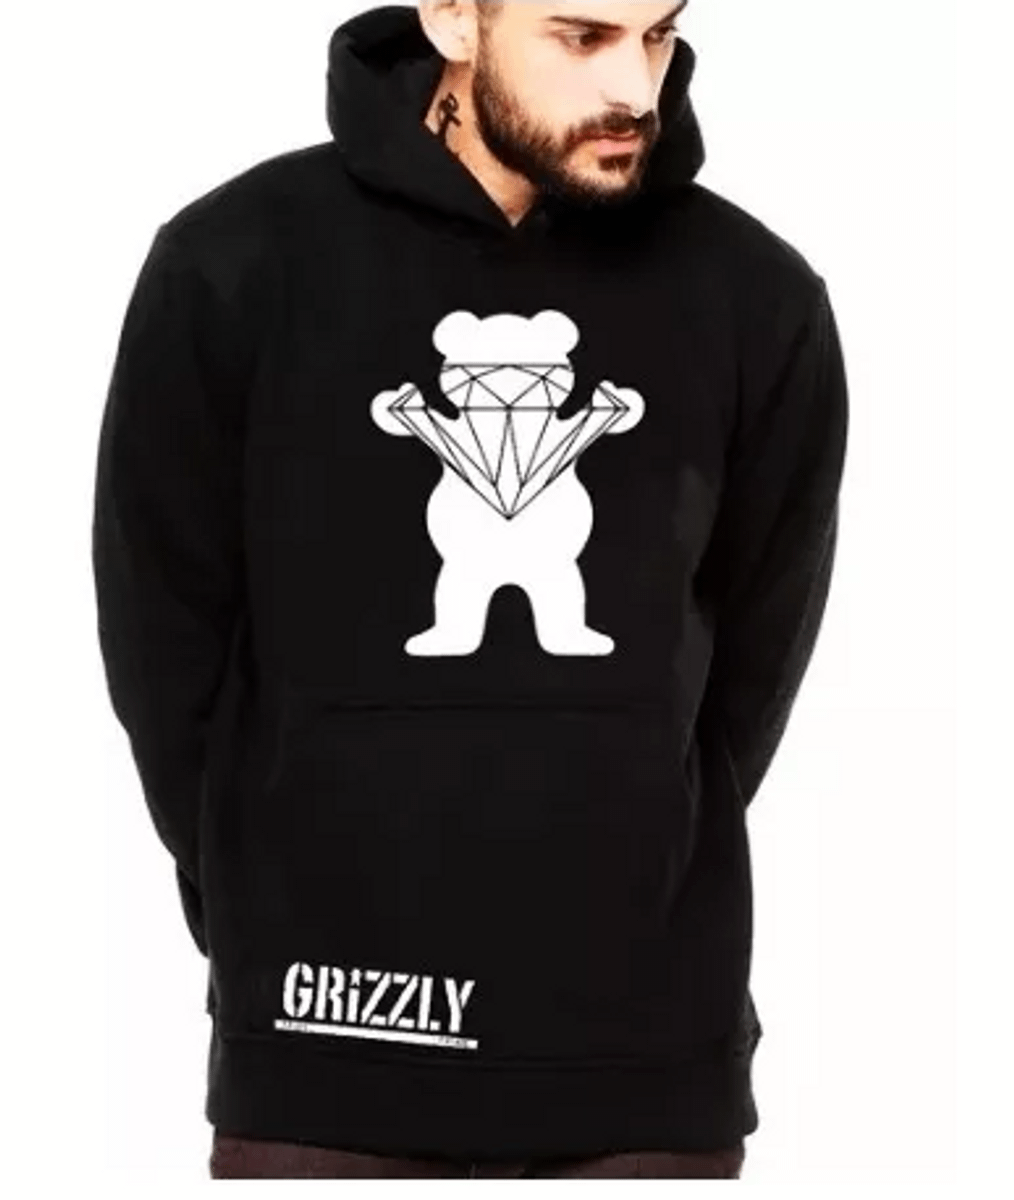 grizzly blusa de frio